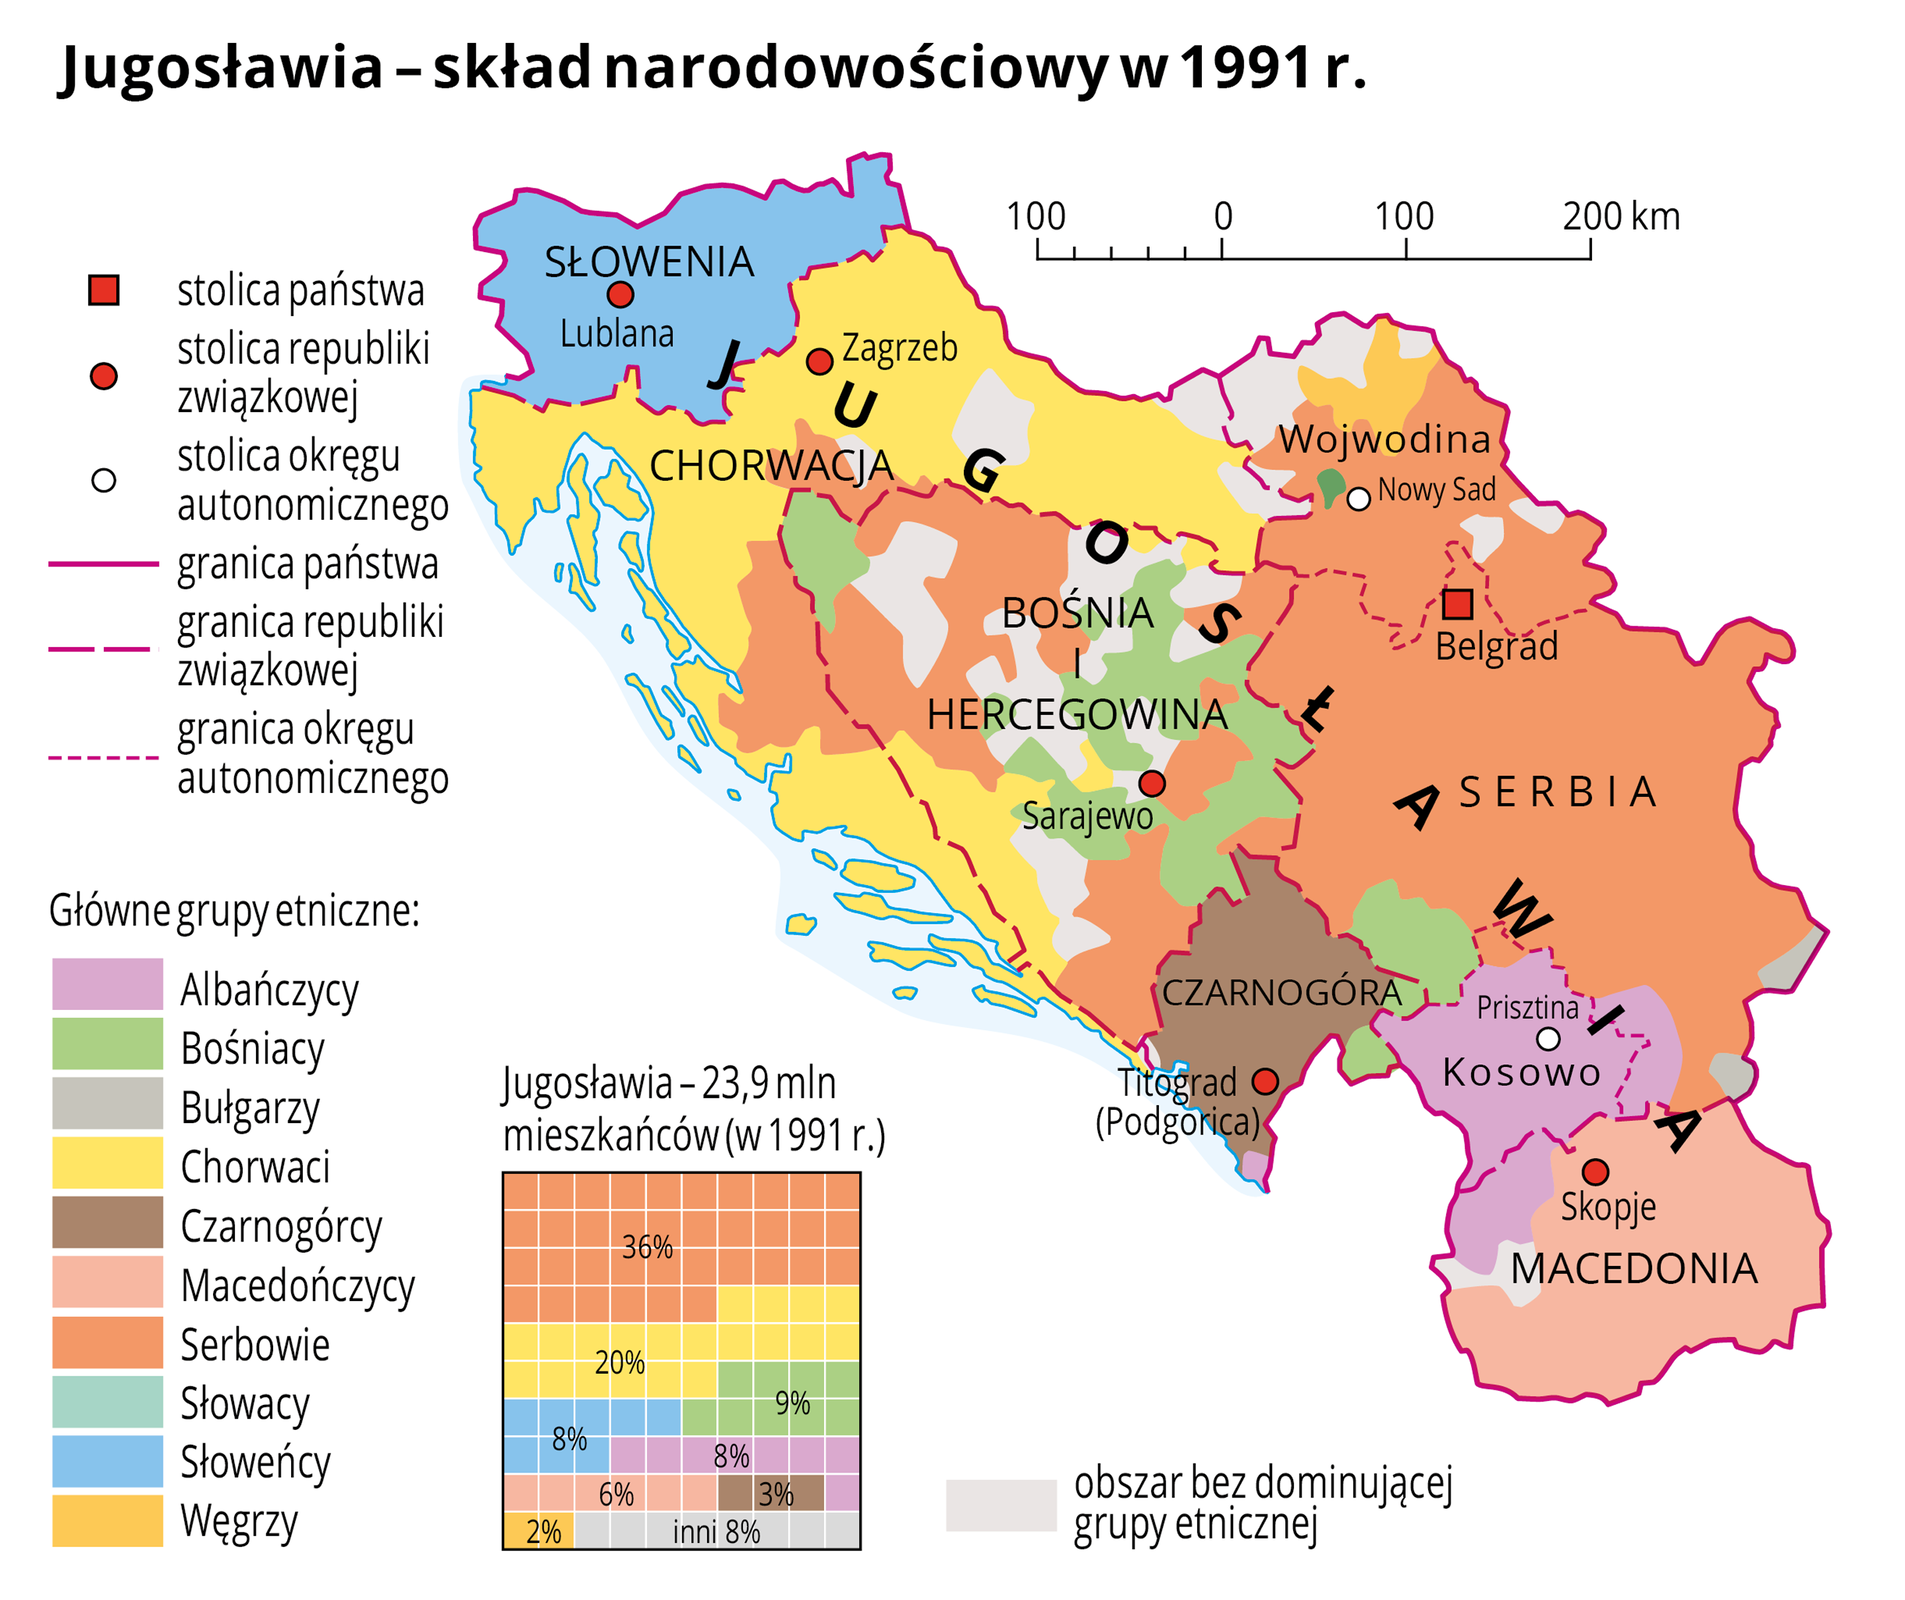 Ilustracja przedstawia skład narodowościowy Jugosławii w tysiąc dziewięćset dziewięćdziesiątym pierwszym roku. Mapa znajduje się z prawej strony, po lewej stronie umieszczono spis dziesięciu grup etnicznych, które na mapie oznaczono kolorami. Na dole ilustracji umieszczono kwadratowy diagram procentowy, na którym przedstawiono skład etniczny ludności w Jugosławii w tysiąc dziewięćset dziewięćdziesiątym pierwszym roku. W diagramie użyto tych samych kolorów na oznaczenie poszczególnych grup etnicznych co na mapie. Zróżnicowanie kolorów na mapie ma odzwierciedlenie w zróżnicowanym składzie etnicznym ludności przedstawionym na diagramie. Trzydzieści sześć procent ludności Jugosławii, która w tysiąc dziewięćset dziewięćdziesiątym pierwszym roku liczyła prawie dwadzieścia cztery miliony, stanowili Serbowie, dwadzieścia procent – Chorwaci, po około osiem procent – Słoweńcy, Bośniacy i Albańczycy, sześć procent – Macedończycy, trzy procent – Czarnogórcy, dwa procent – Węgrzy, pozostałe osiem procent – inni. Na mapie zaznaczono granicę państwa, granice republik związkowych i okręgów autonomicznych, opisano nazwę państwa, nazwy republik związkowych i okręgów autonomicznych. Oznaczono czerwonym kwadracikiem i opisano stolicę państwa. Oznaczono czerwonymi kółeczkami i opisano stolice republik związkowych. Oznaczono białymi kółeczkami i opisano stolice okręgów autonomicznych. Kolorem błękitnym zaznaczono wąski fragment Morza Adriatyckiego wzdłuż wybrzeży Chorwacji. Kolorami, jak już wspominano oznaczono grupy etniczne. Dominuje kolor pomarańczowy oznaczony w legendzie jako Serbowie. Po lewej stronie mapy w legendzie umieszczono wyjaśnienia znaków użytych na mapie: stolice państw, republik związkowych i okręgów autonomicznych, granice państw, republik związkowych i okręgów autonomicznych. Kolorami oznaczono następujące grupy etniczne: Albańczycy, Bośniacy, Bułgarzy, Chorwaci, Czarnogórcy, Macedończycy, Serbowie, Słowacy, Słoweńcy, Węgrzy.